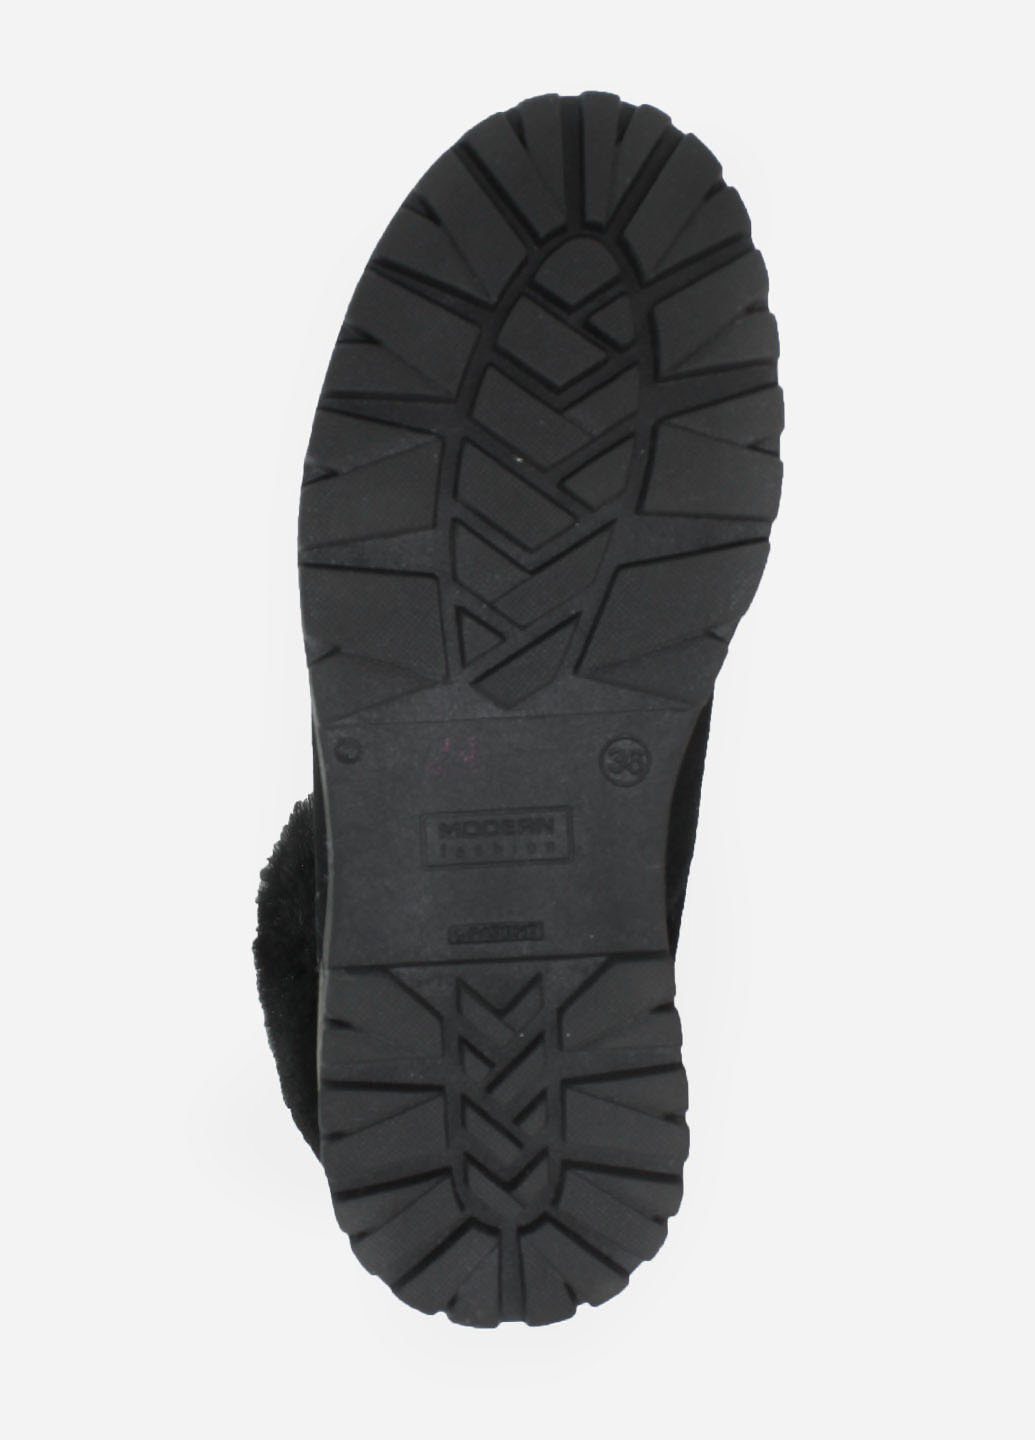 Зимние ботинки rg18-55971-11 черный Gampr из натуральной замши